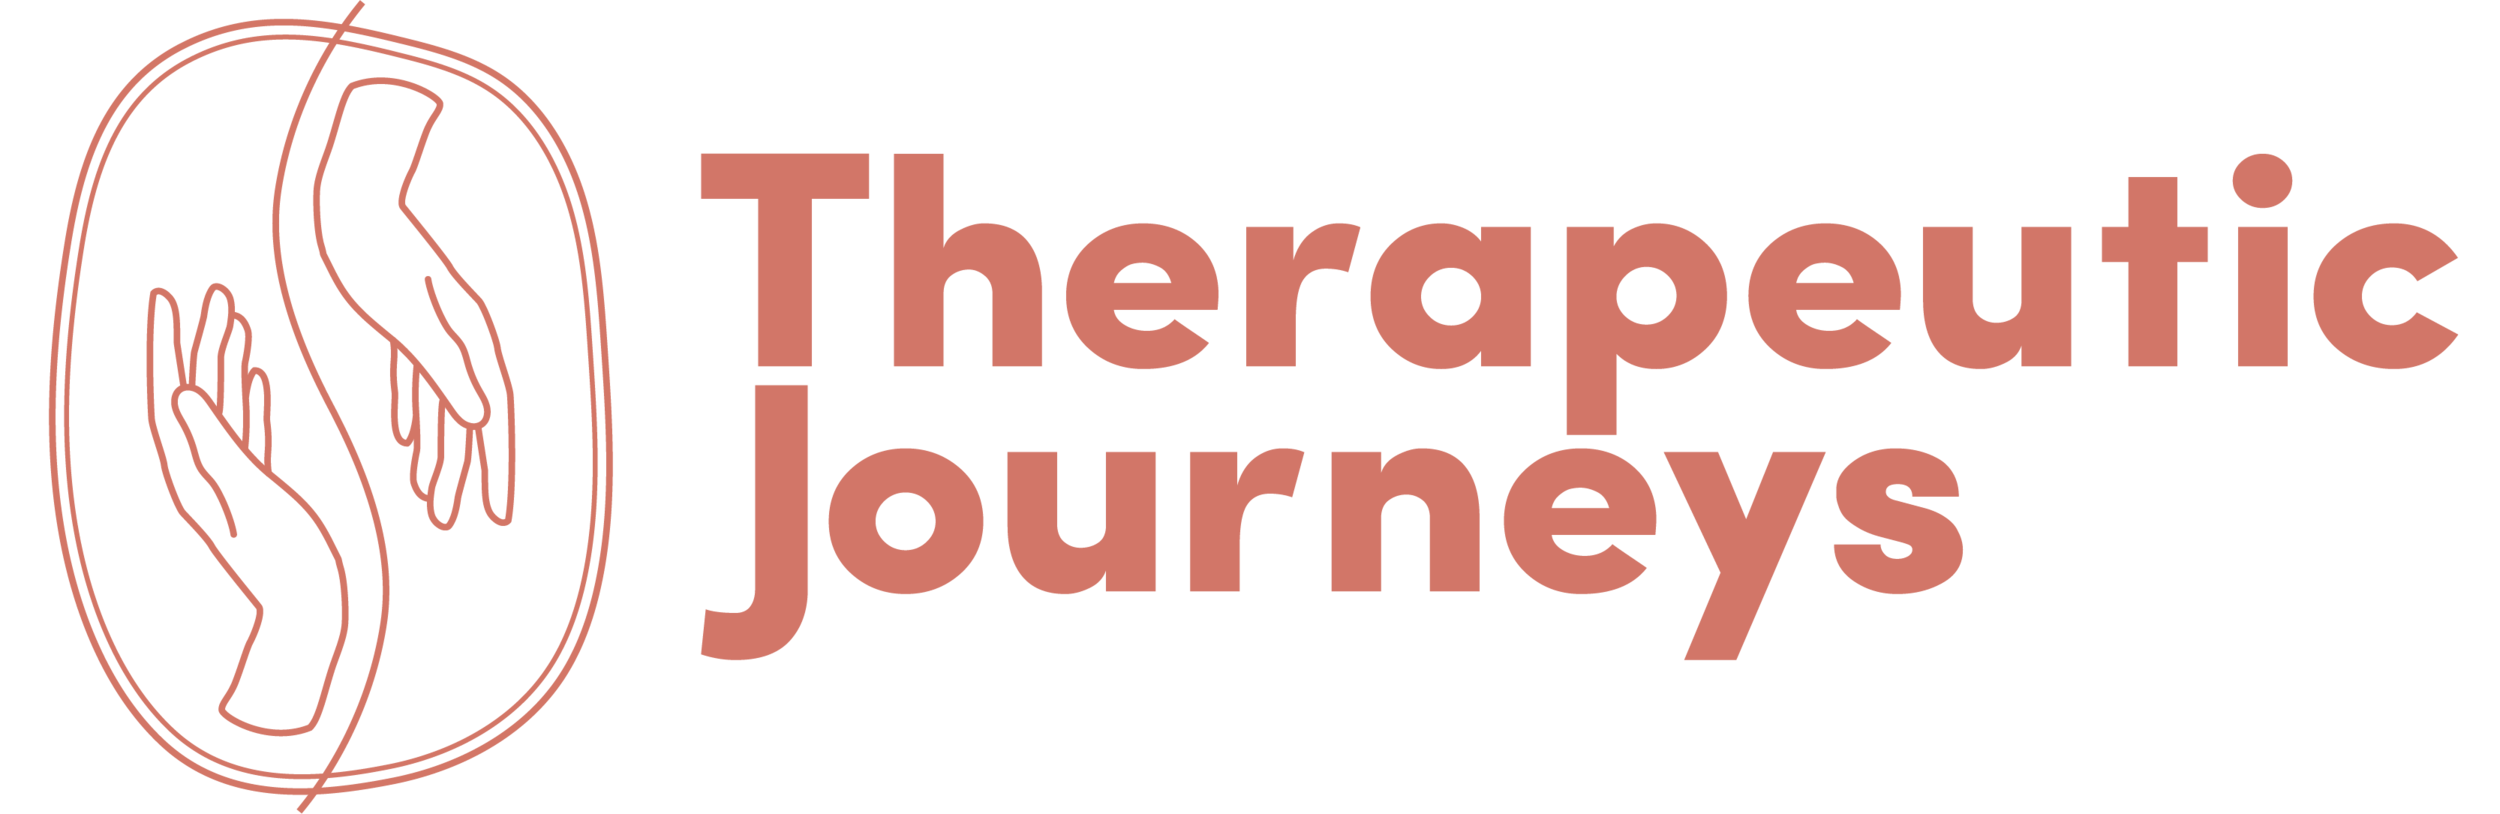 Therapeutic Journeys